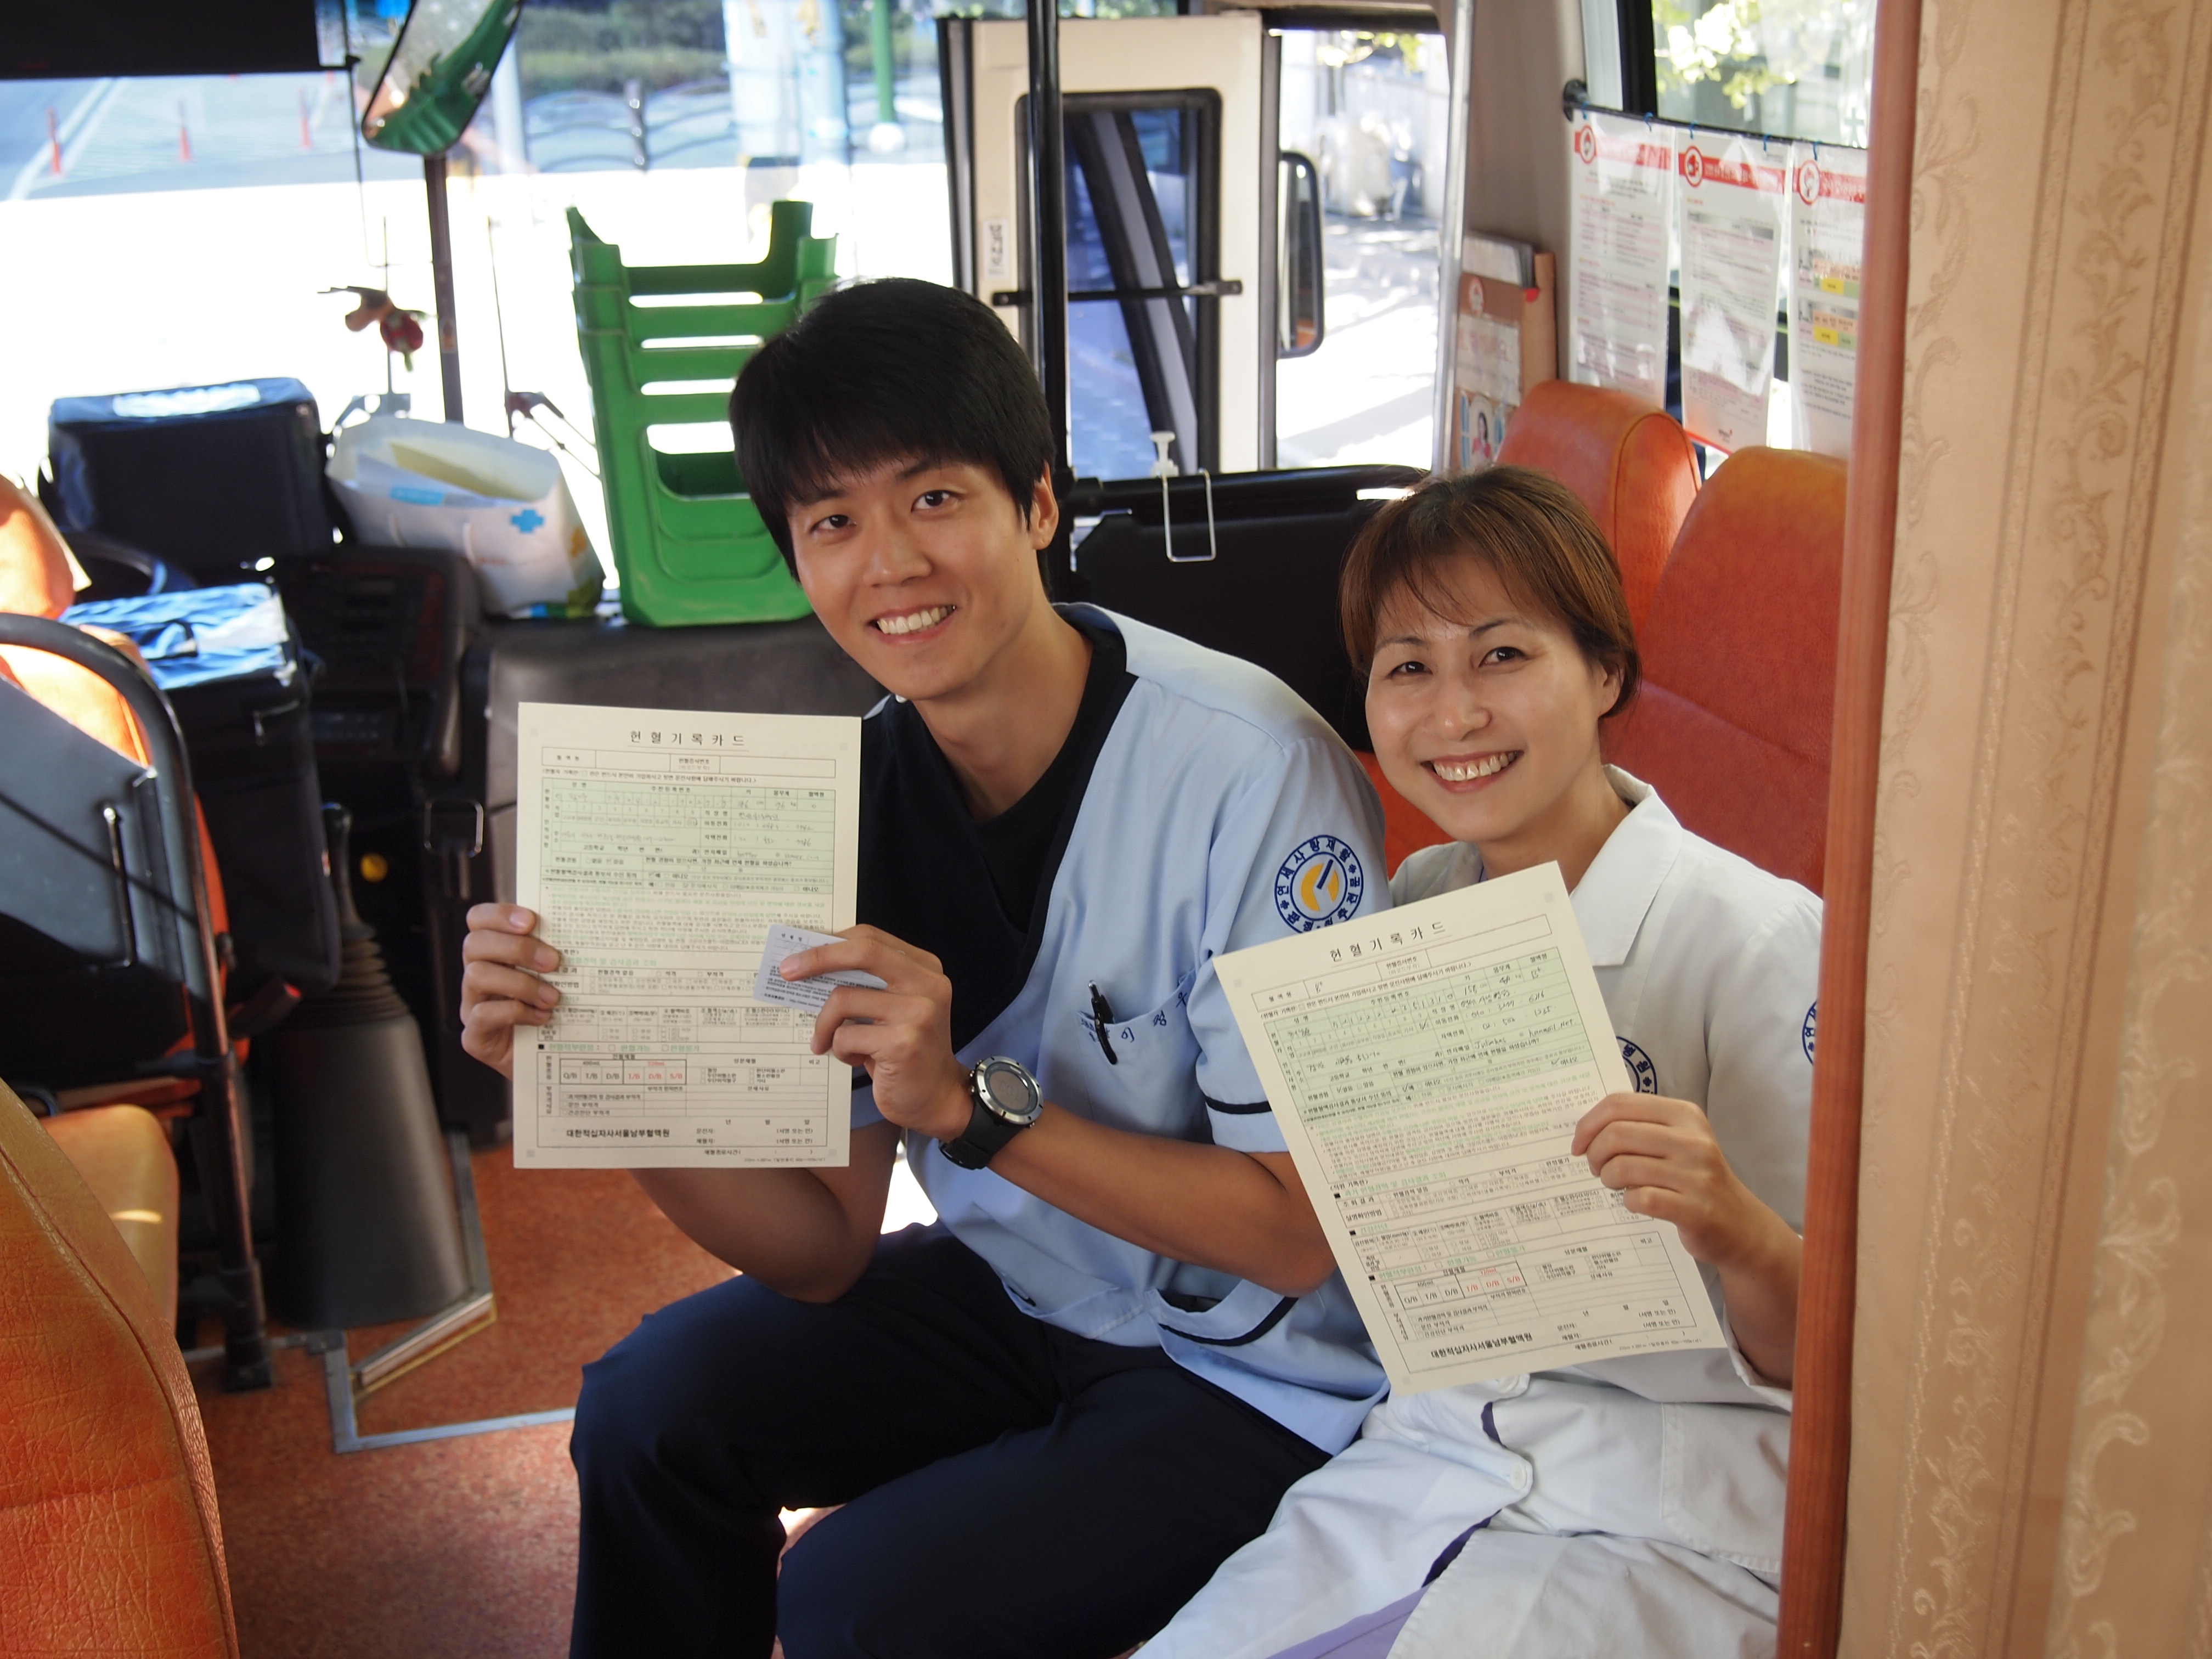 2013-10-22일 강남점 `사랑의 헌혈캠페인` 실시  게시글의 2번째 첨부파일입니다.